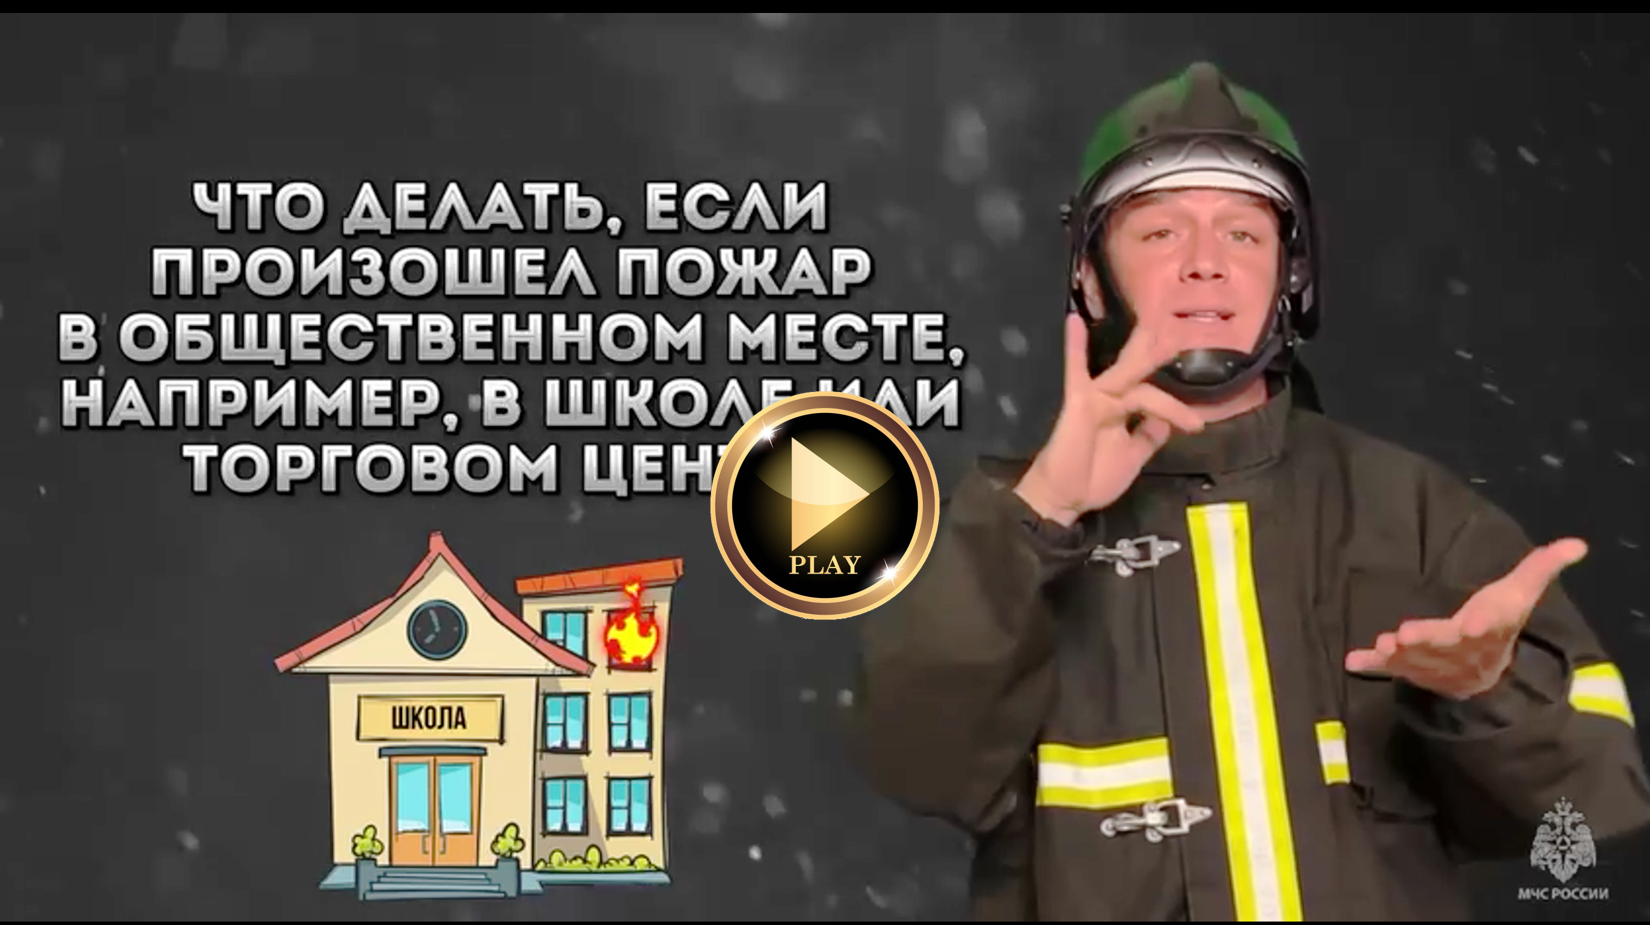 видео "Пожарная безопасность детям"